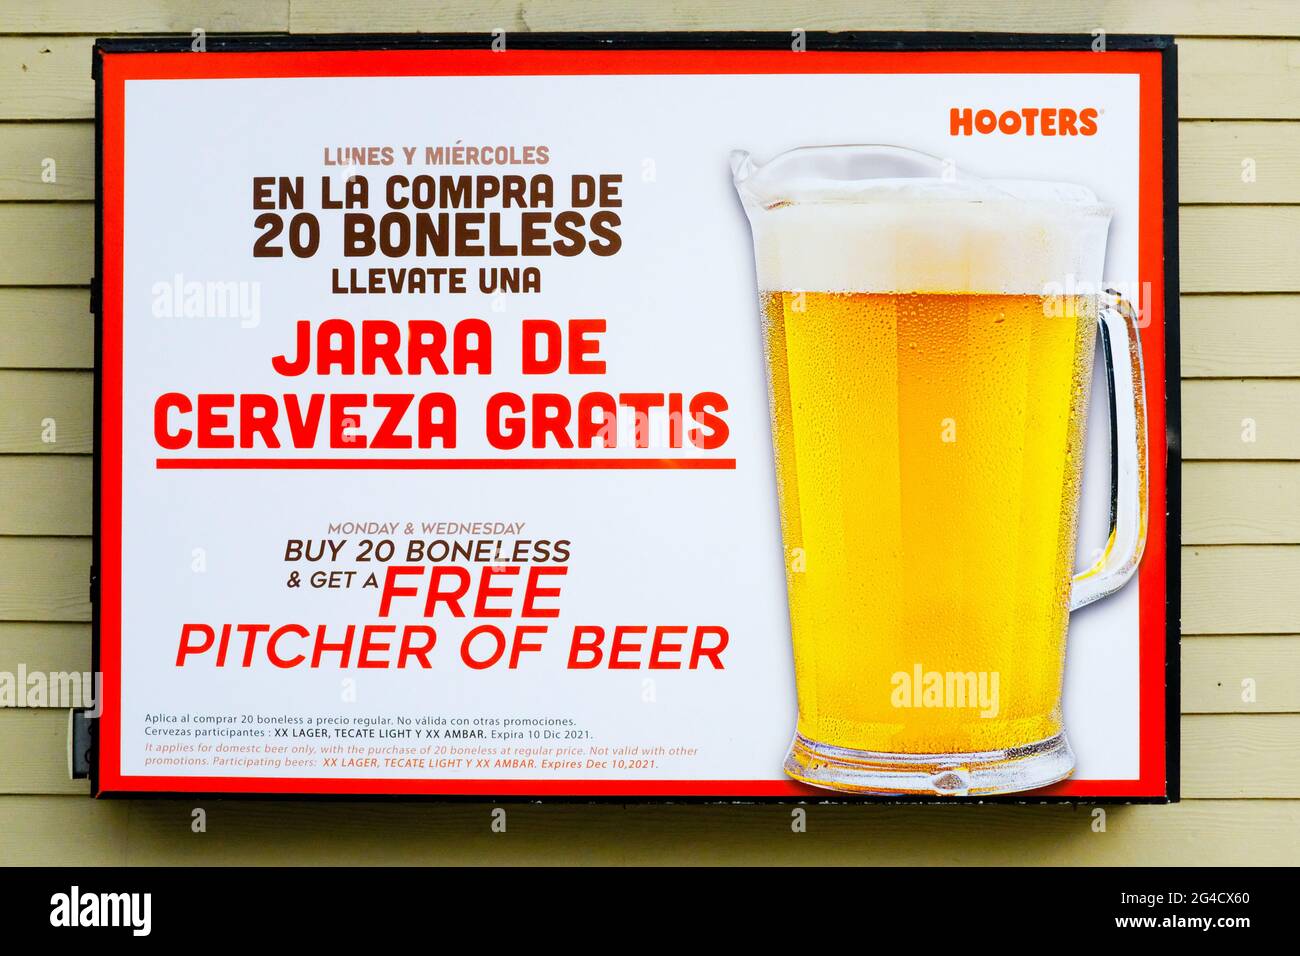 Hooters Werbung in Cancun Mexiko auf Englisch und Spanisch Stockfoto